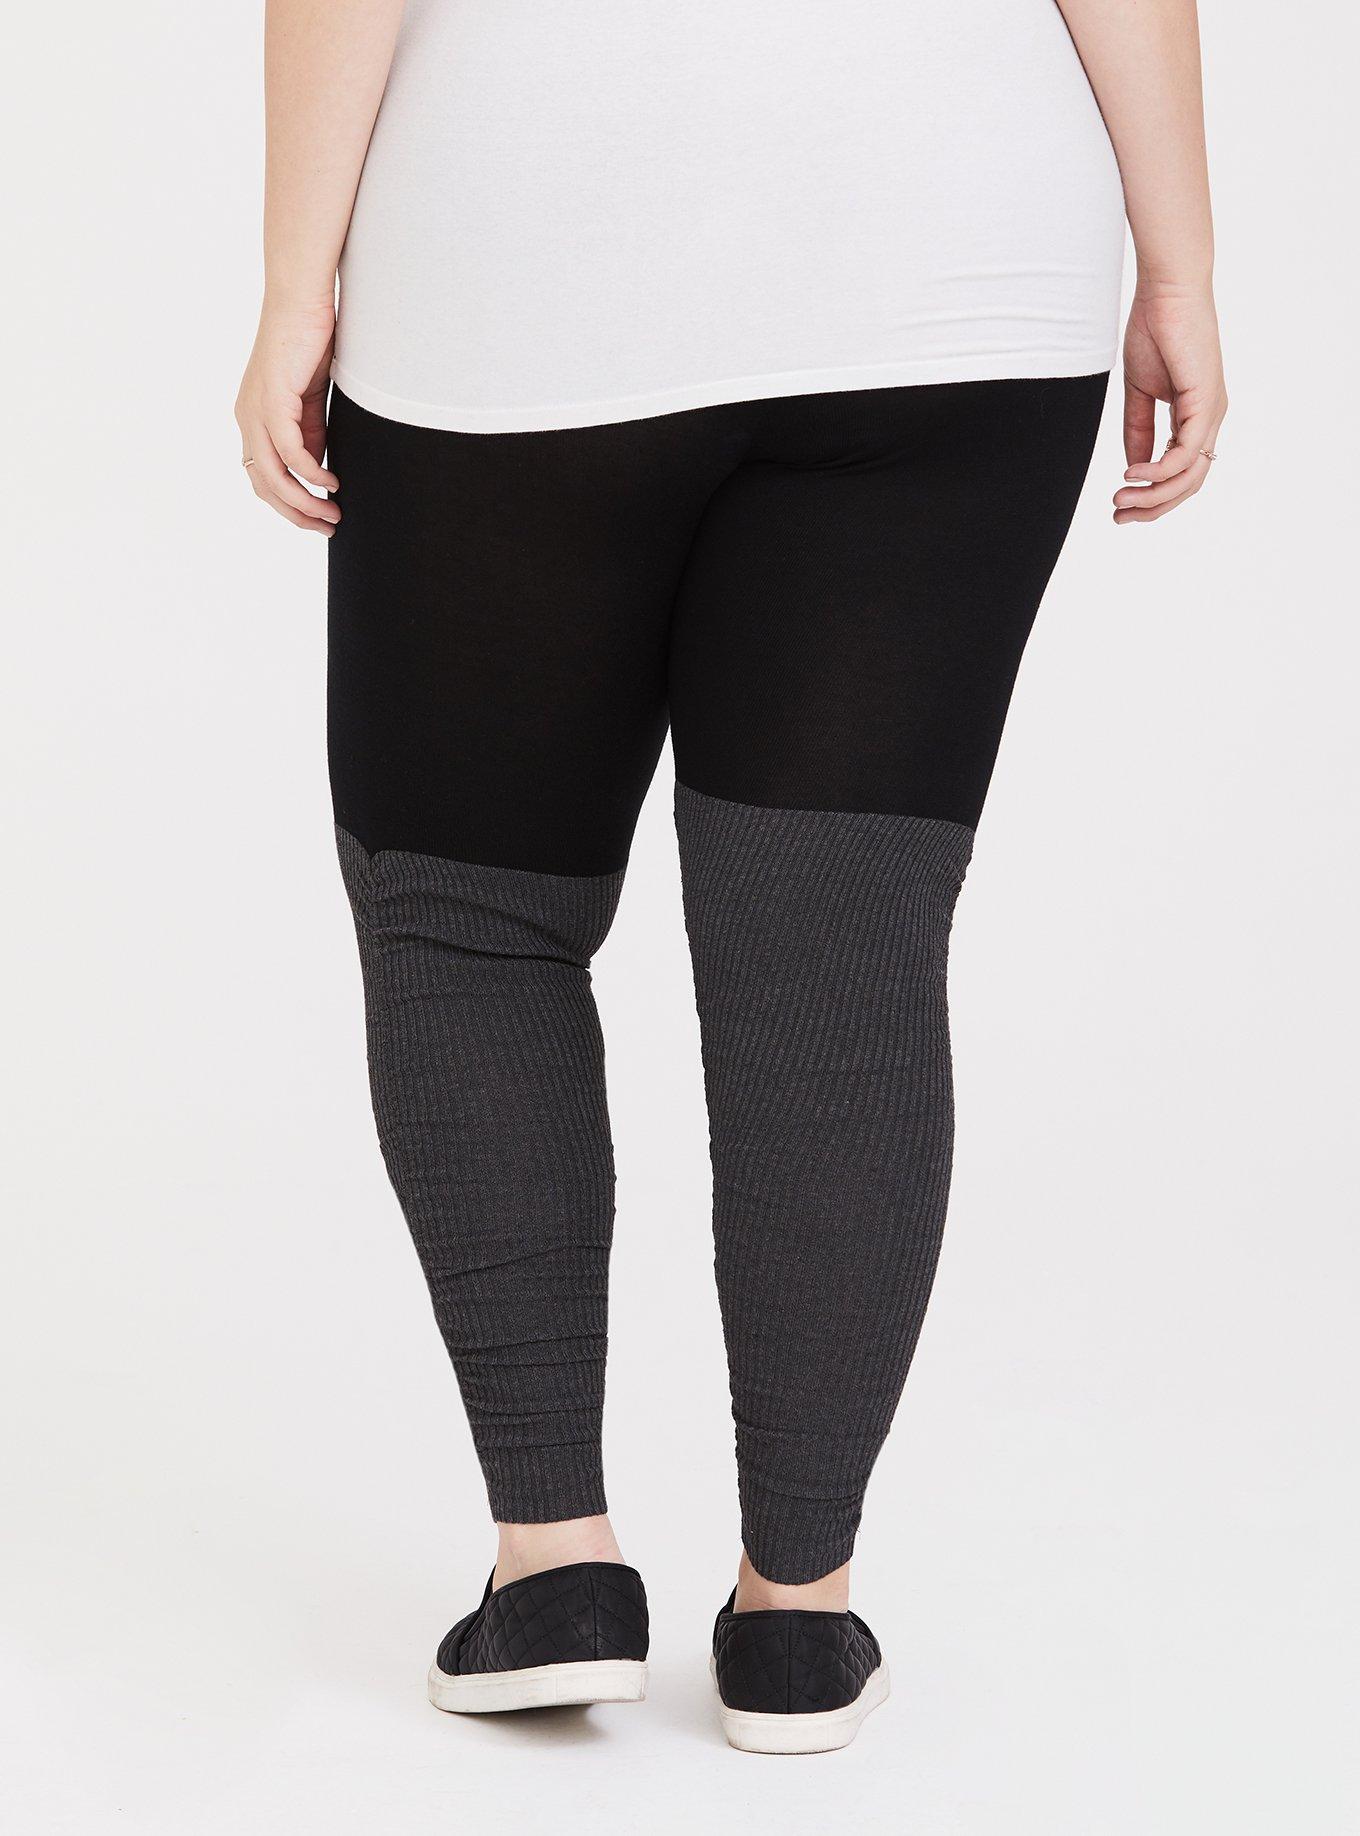 Plus Size - Sweater Leggings - Torrid